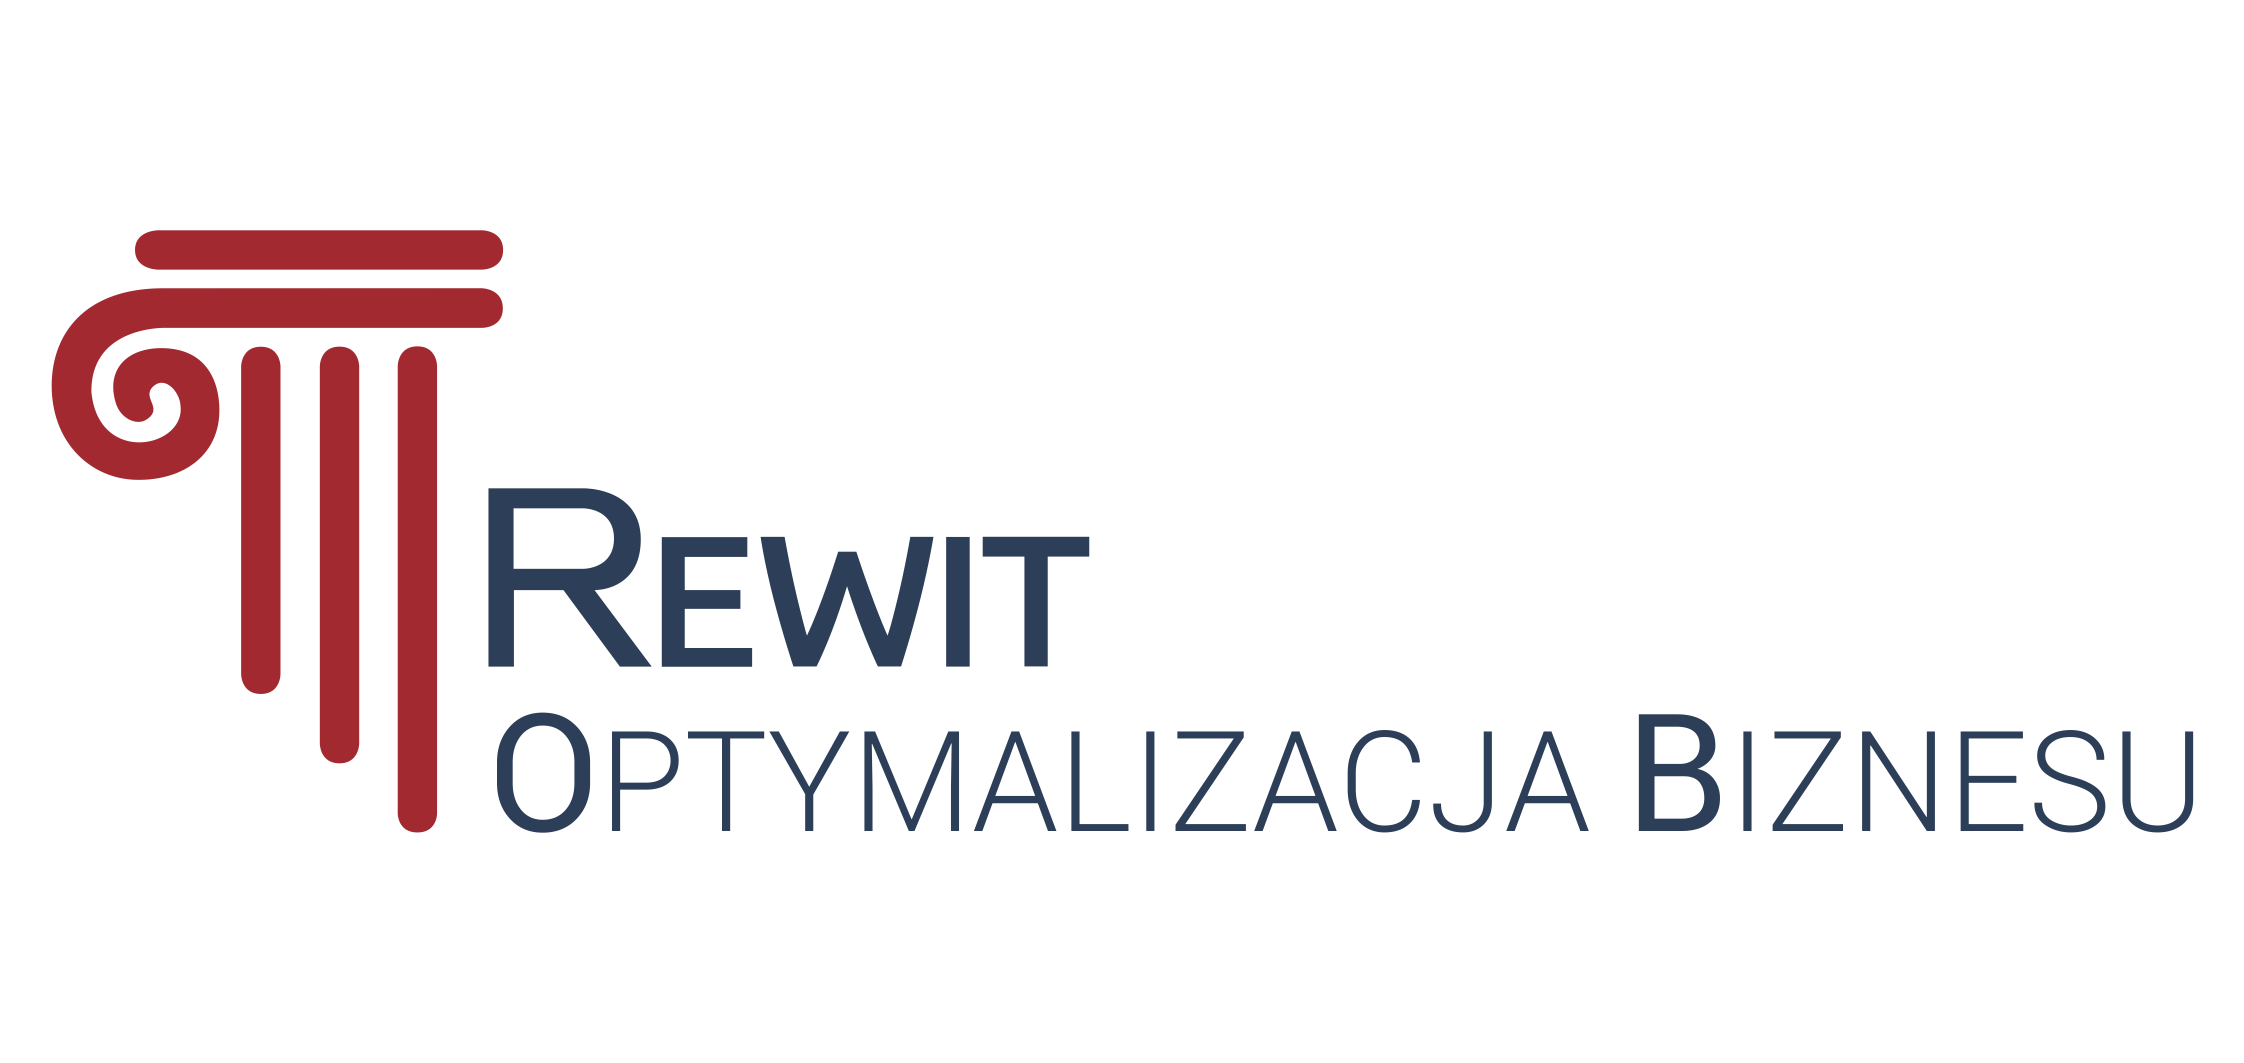 REWIT Optymalizacja Biznesu Sp. z o.o.